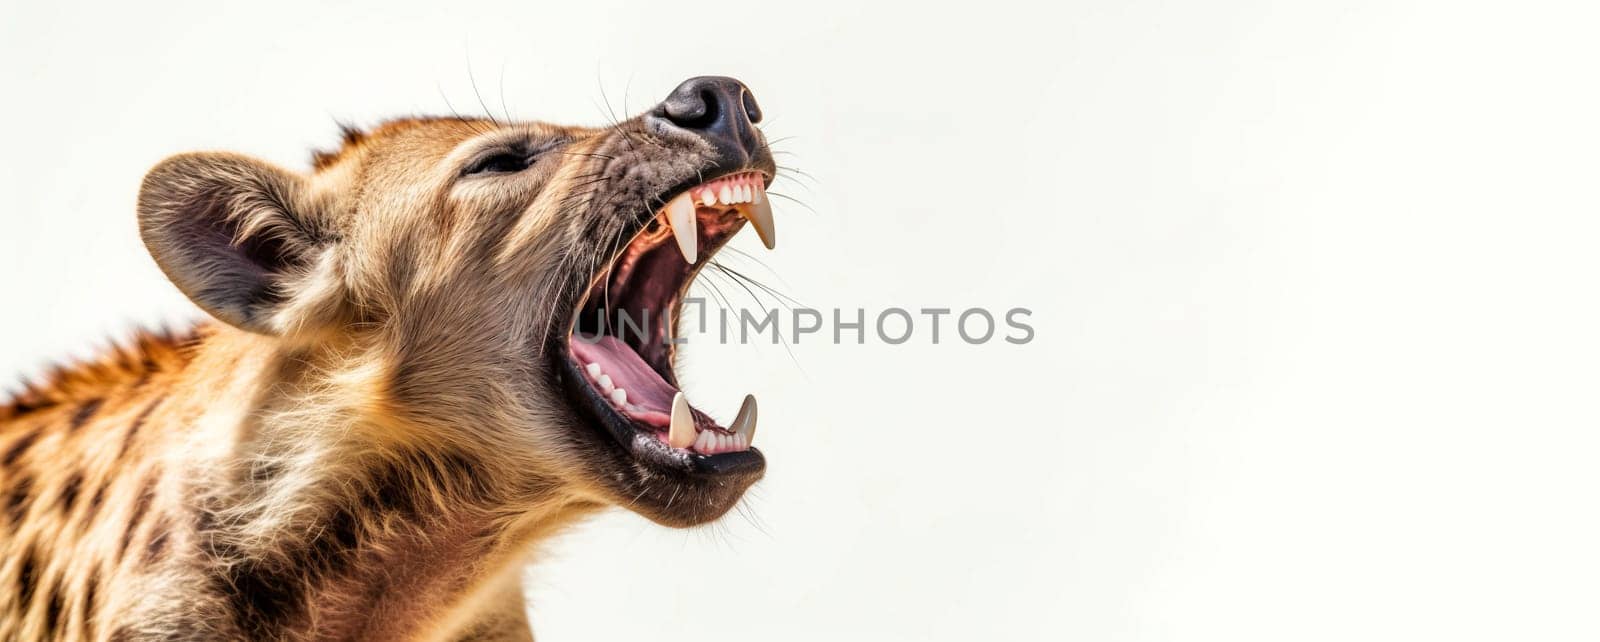 Screaming hyena tourism safari animal banner. Generate Ai by ylivdesign